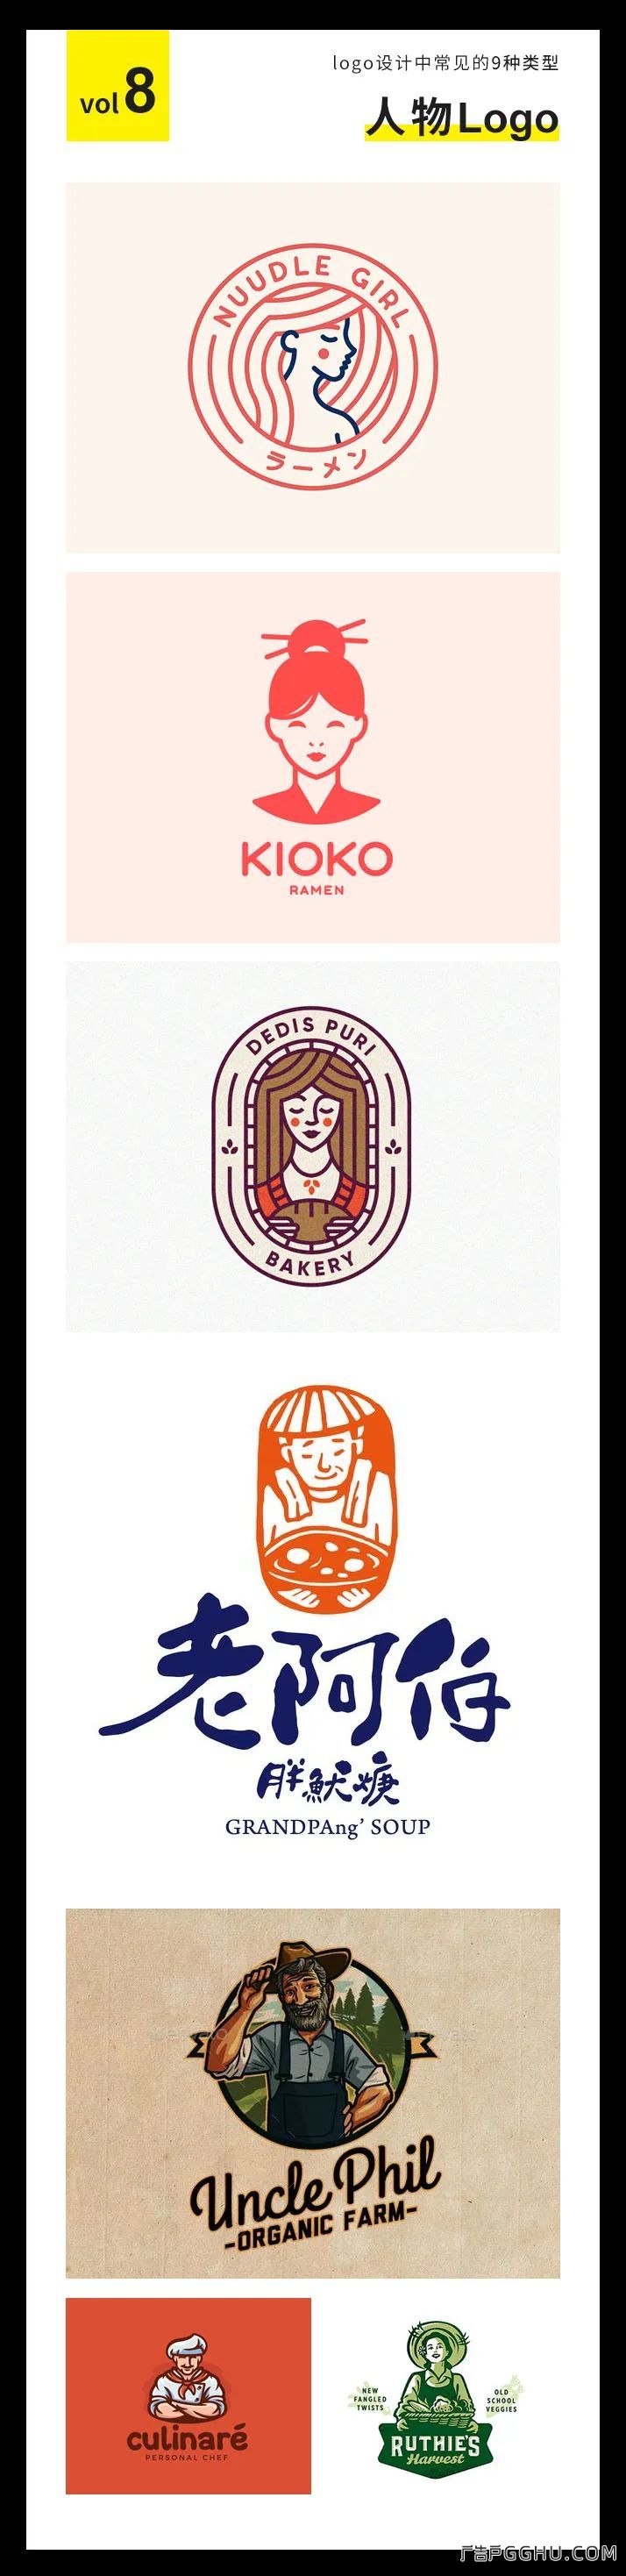 Logo标识设计中常用的9种类型(图8)